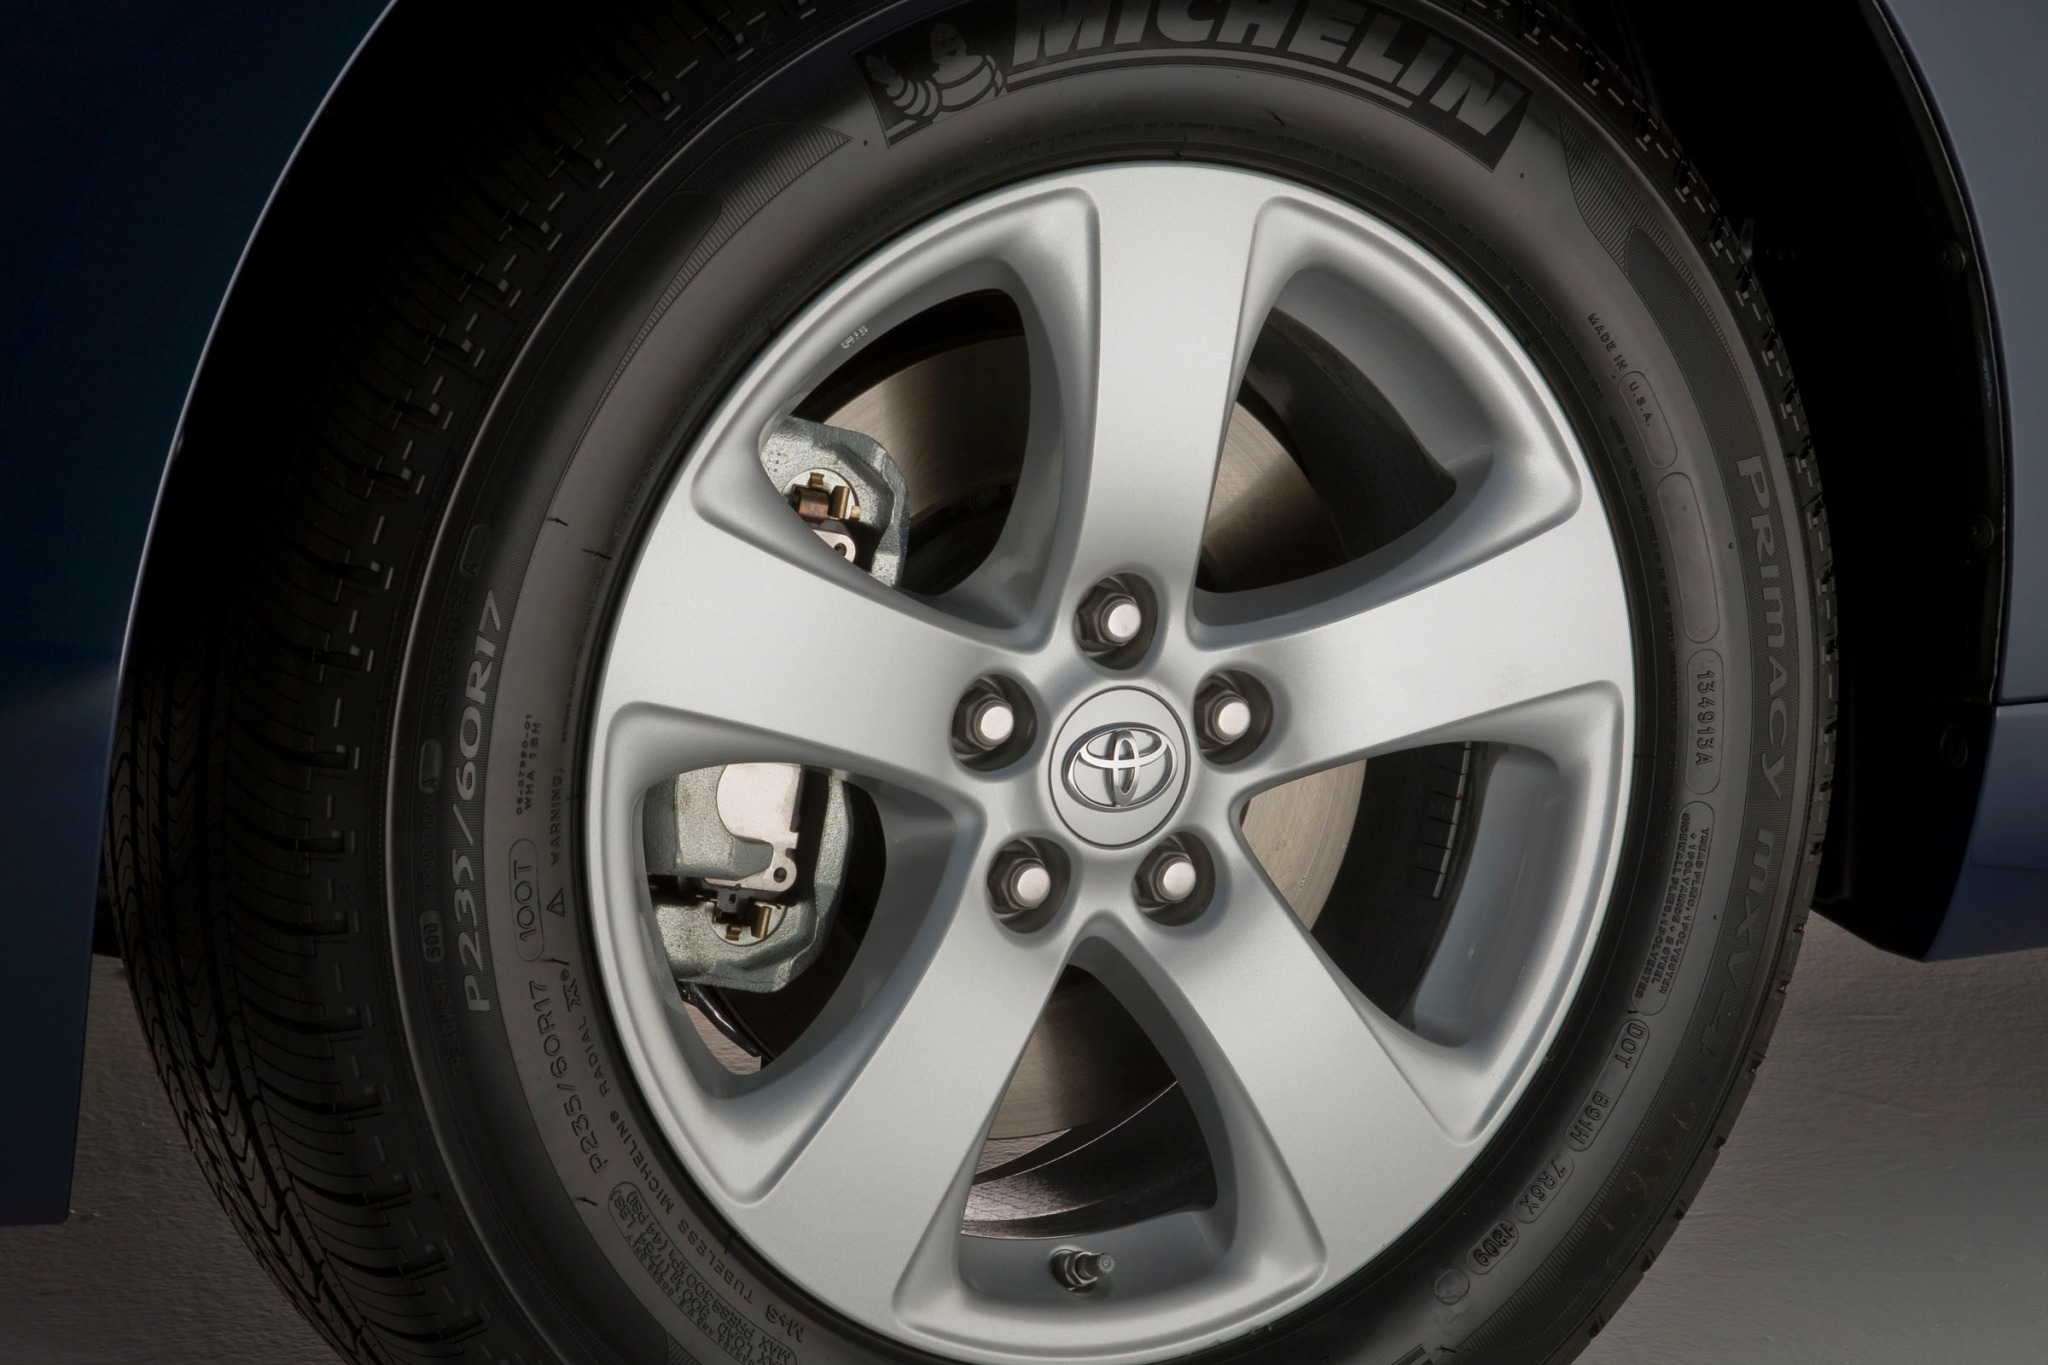 2012 Toyota Sienna LE 7-Passenger Passenger Minivan Wheel